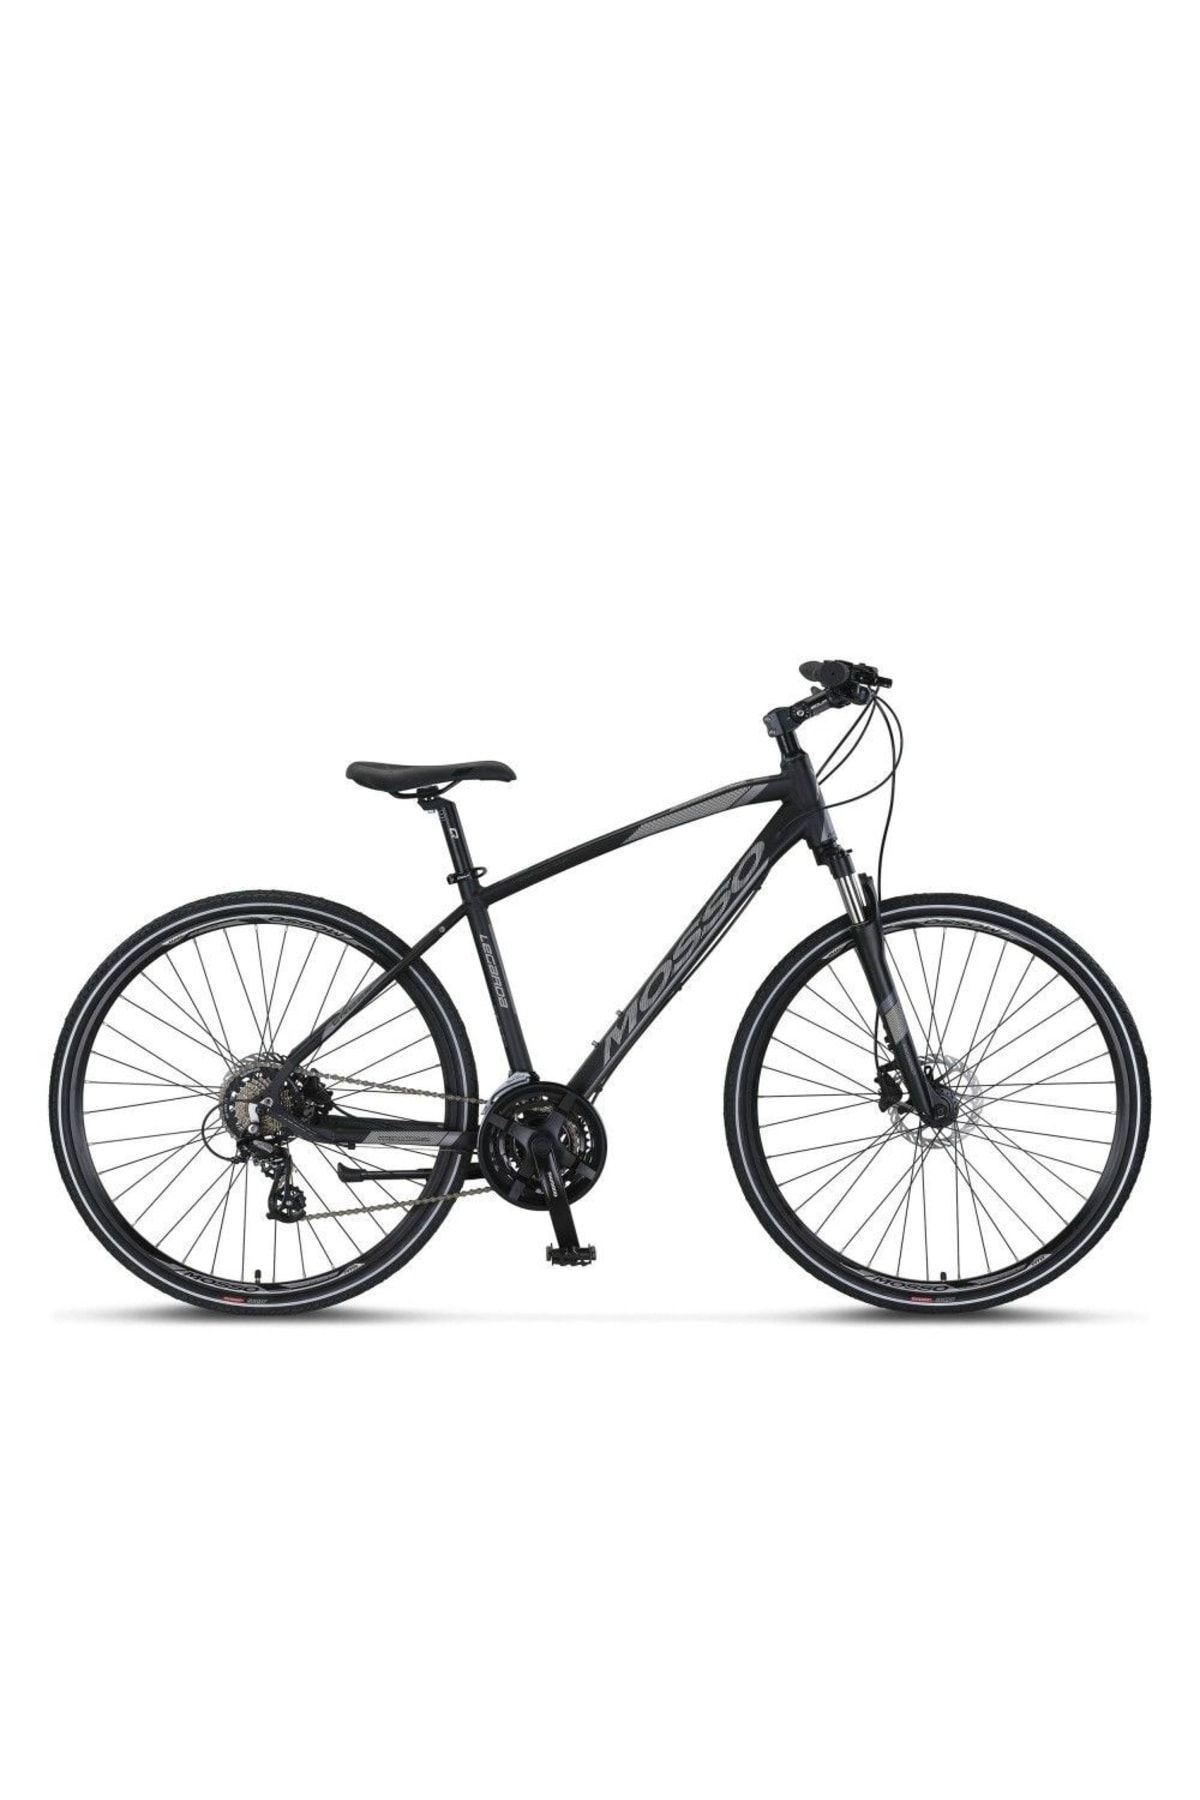 Mosso Legarda 2321 Msm Hidrolik Trekking Bisiklet 46cm Siyah - Antrasit